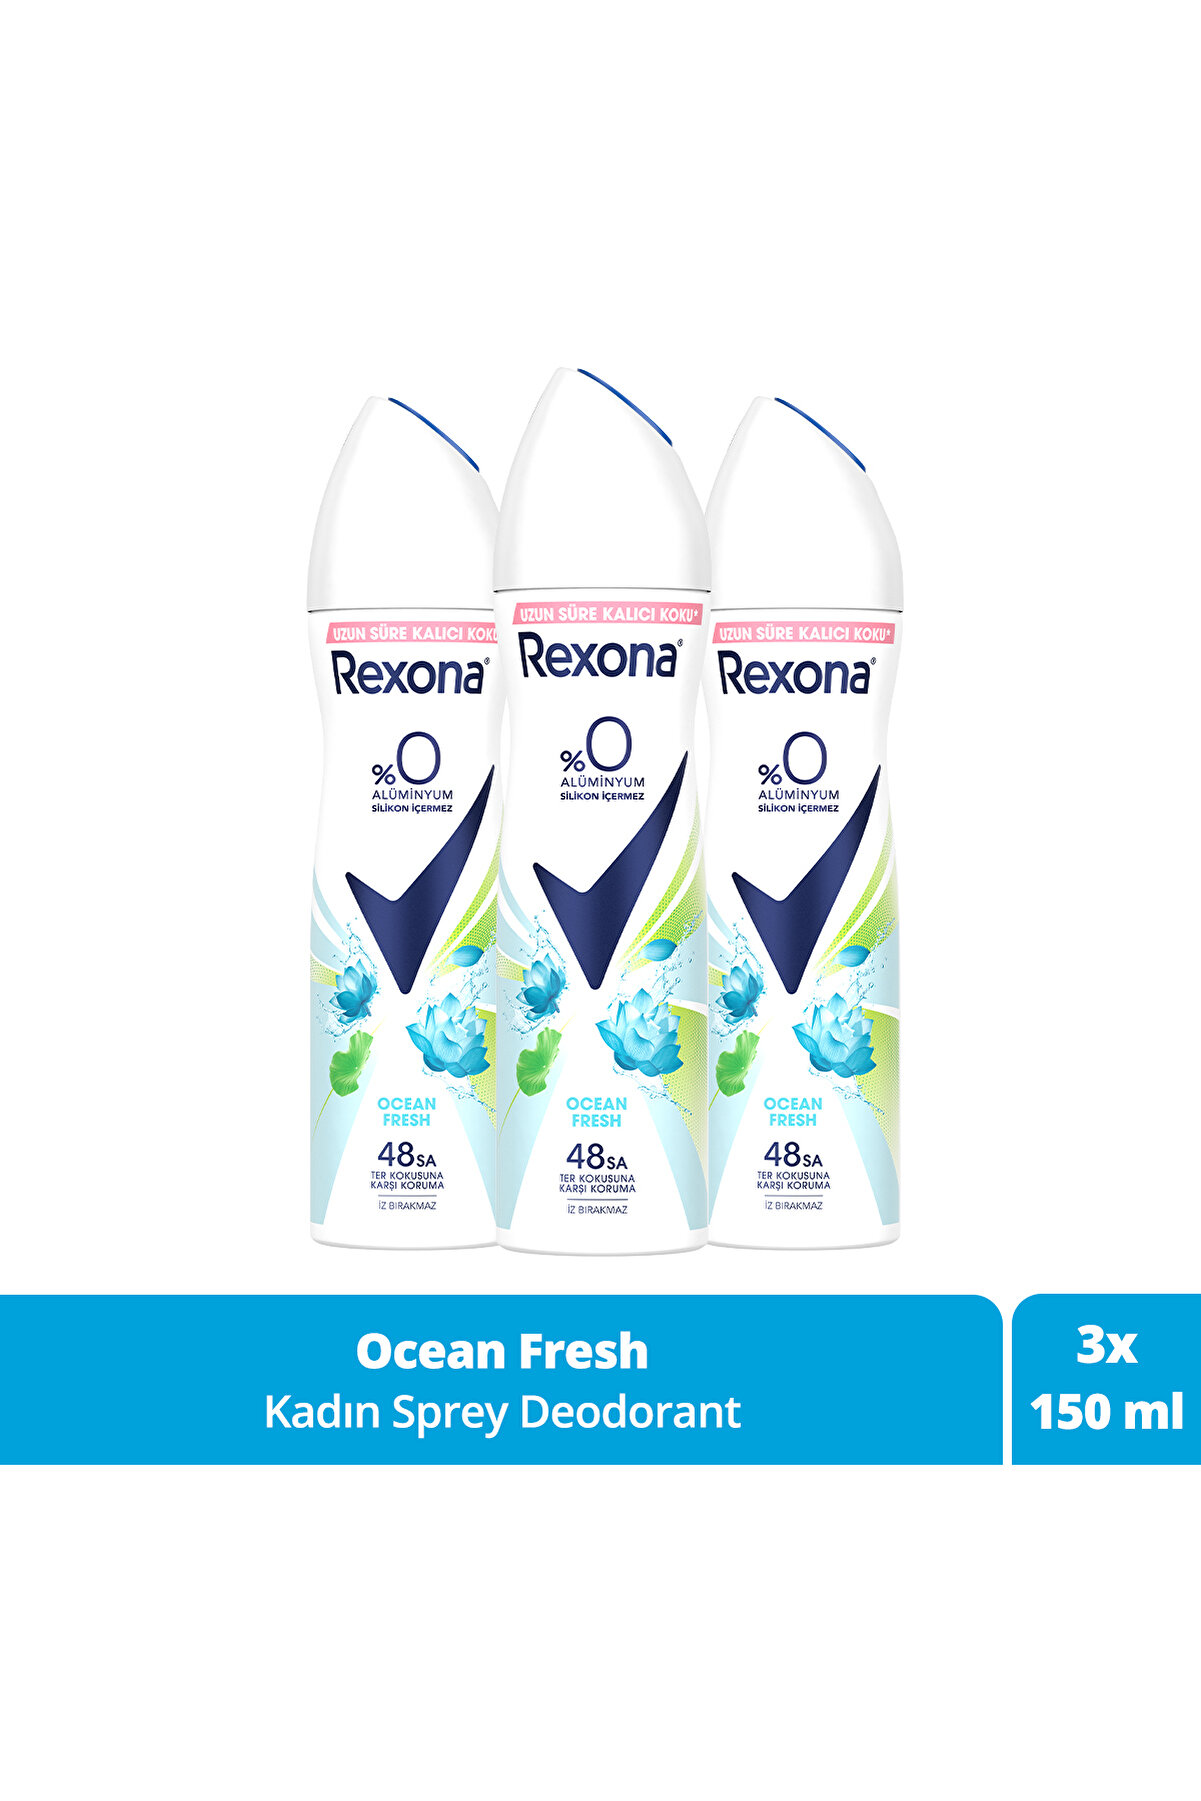 Rexona Kadın Sprey Deodorant Ocean Fresh %0 Alüminyum 48 Saat Ter Kokusuna Karşı Koruma 150 ml X3